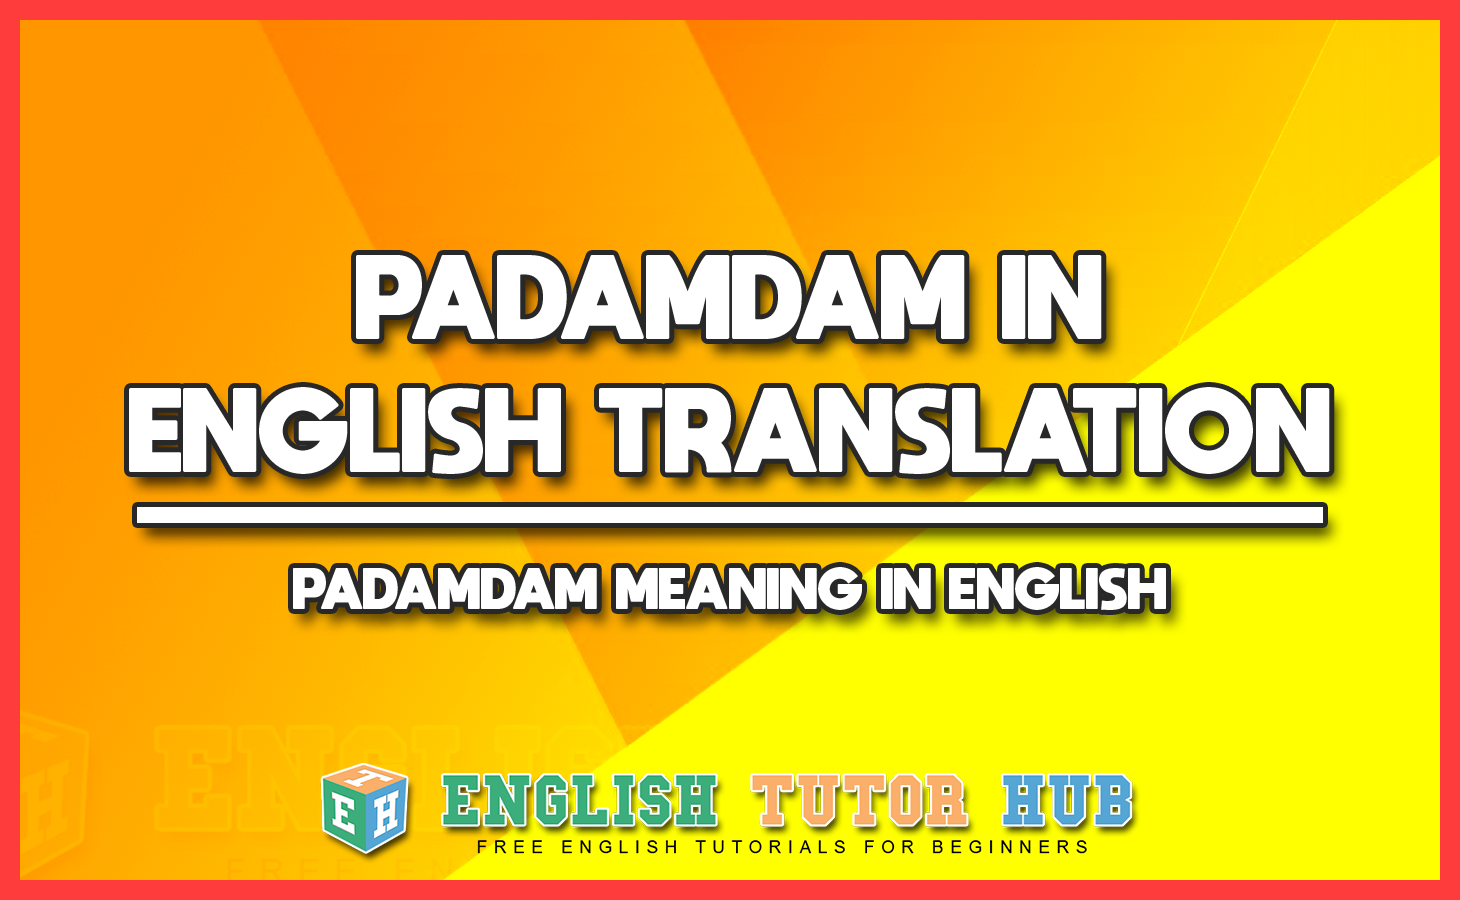 PADAMDAM IN ENGLISH TRANSLATION - PADAMDAM MEANING IN ENGLISH